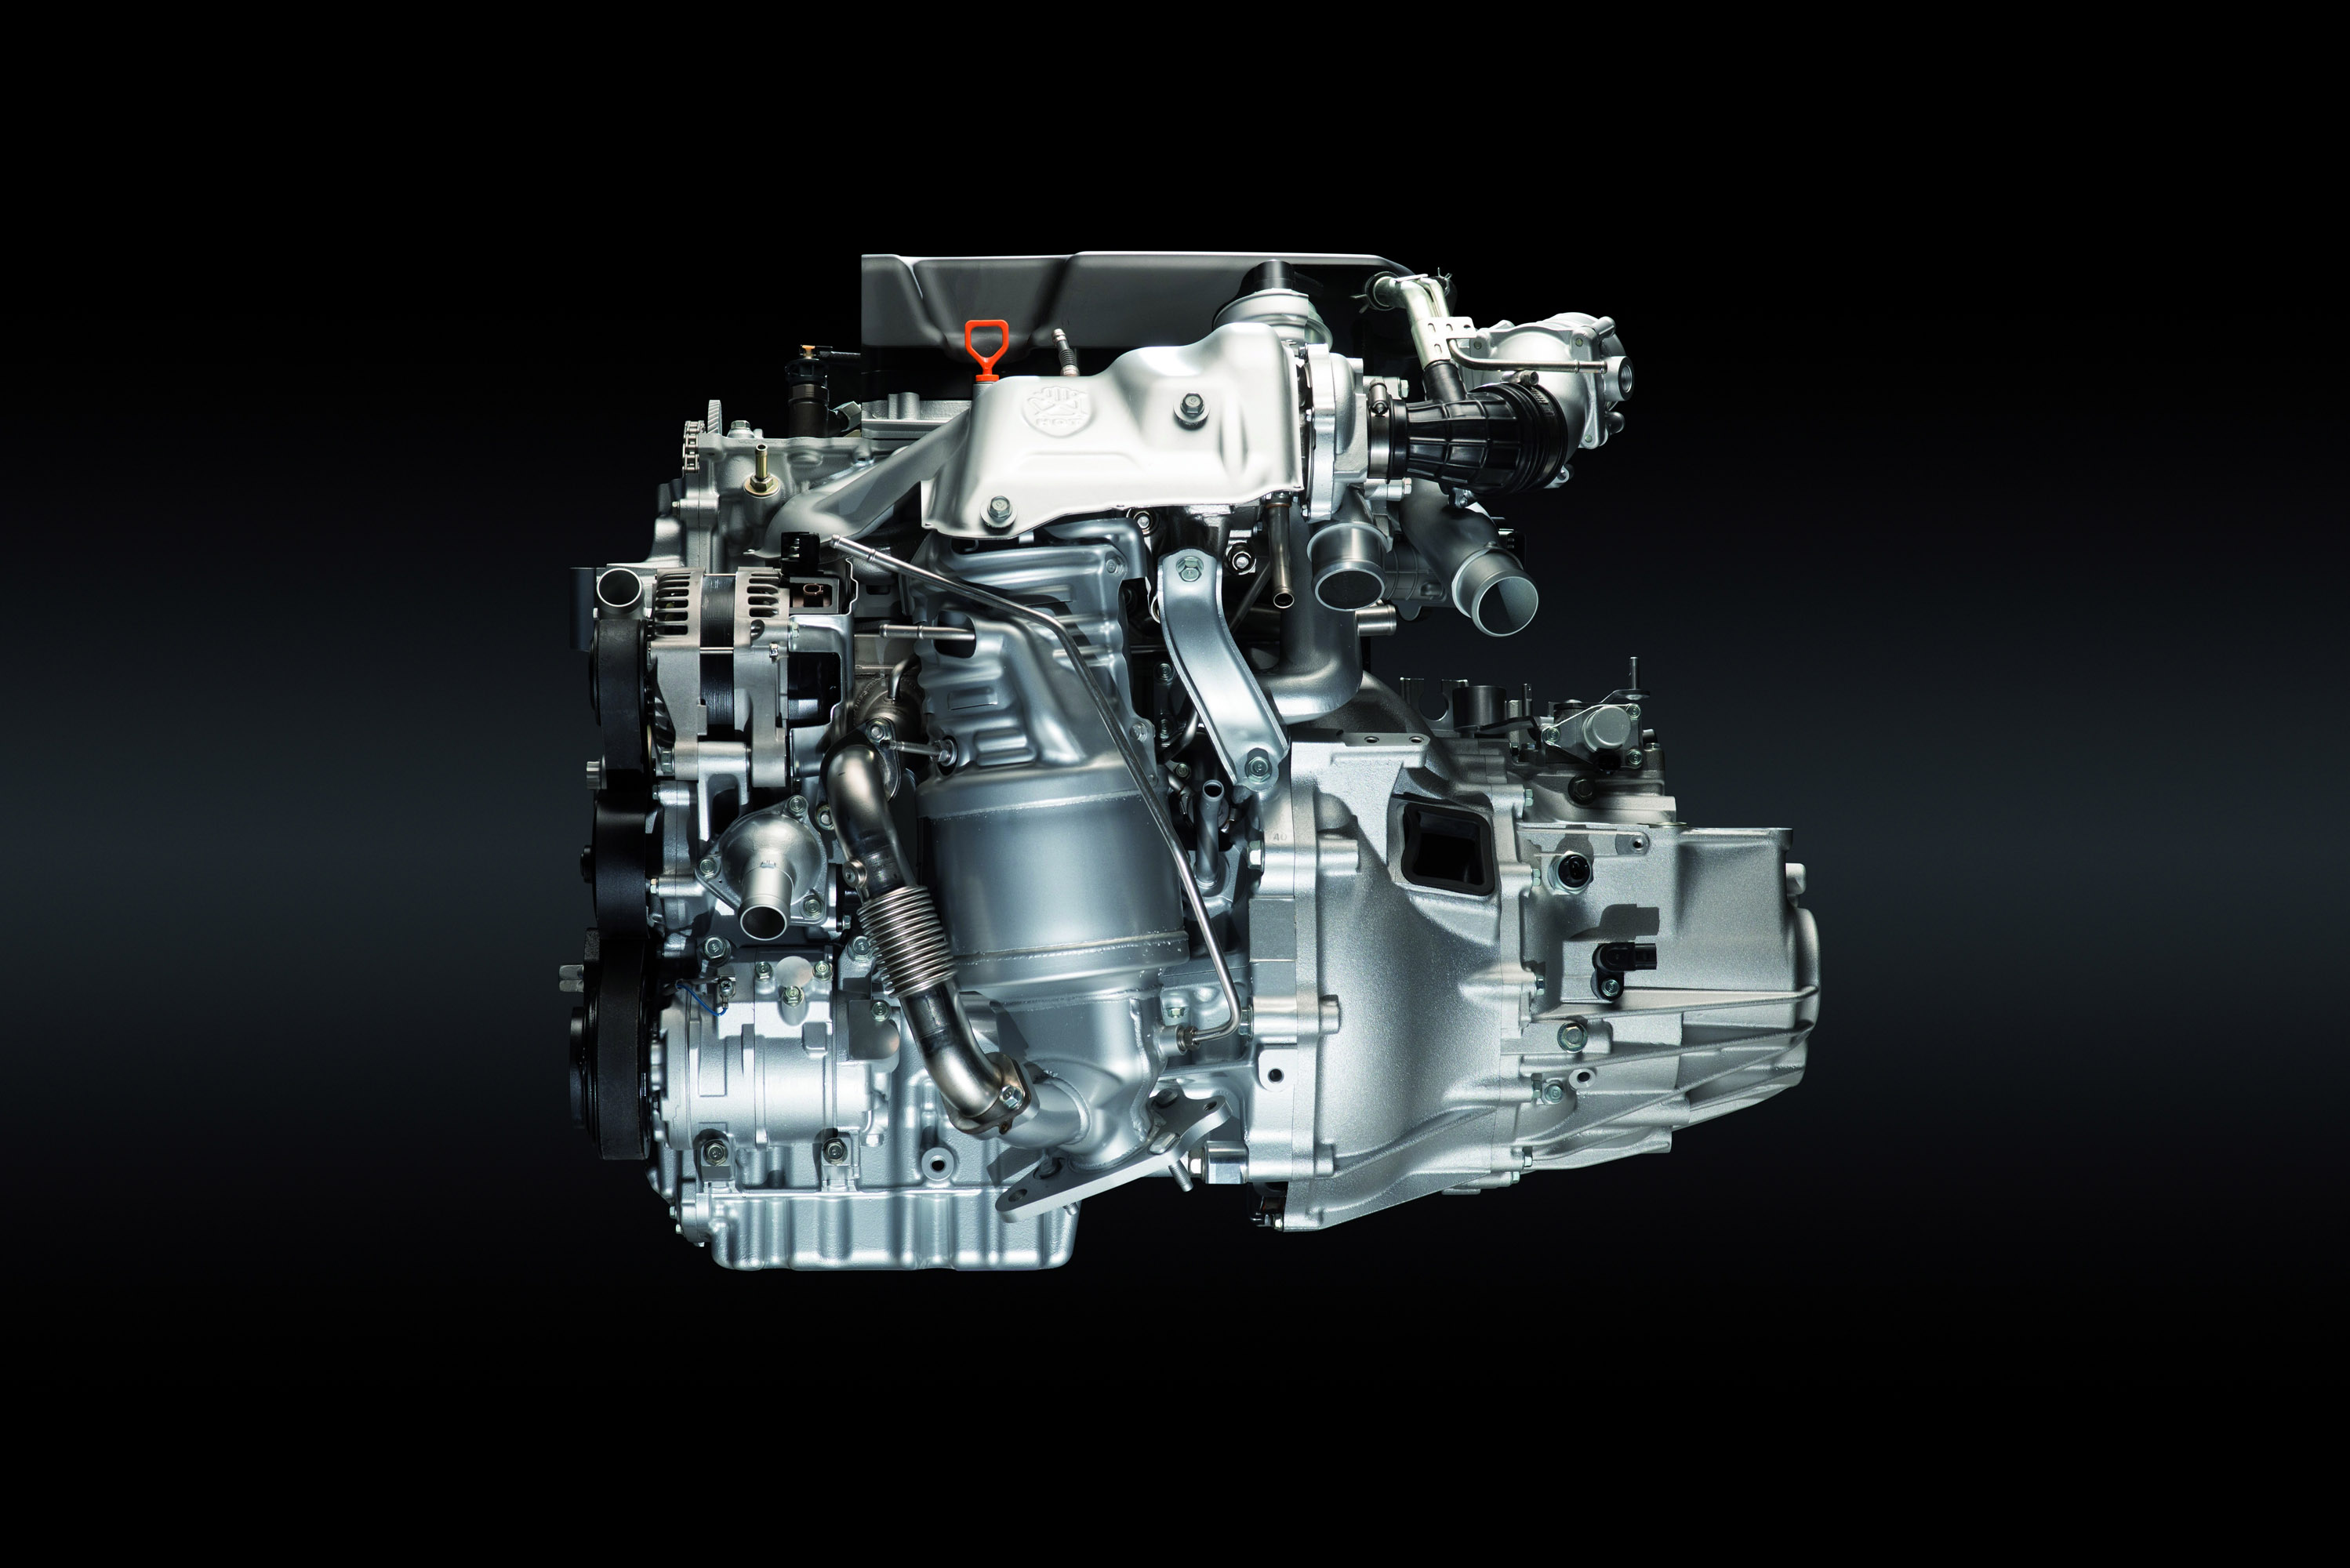 1.6 i-DTEC engine